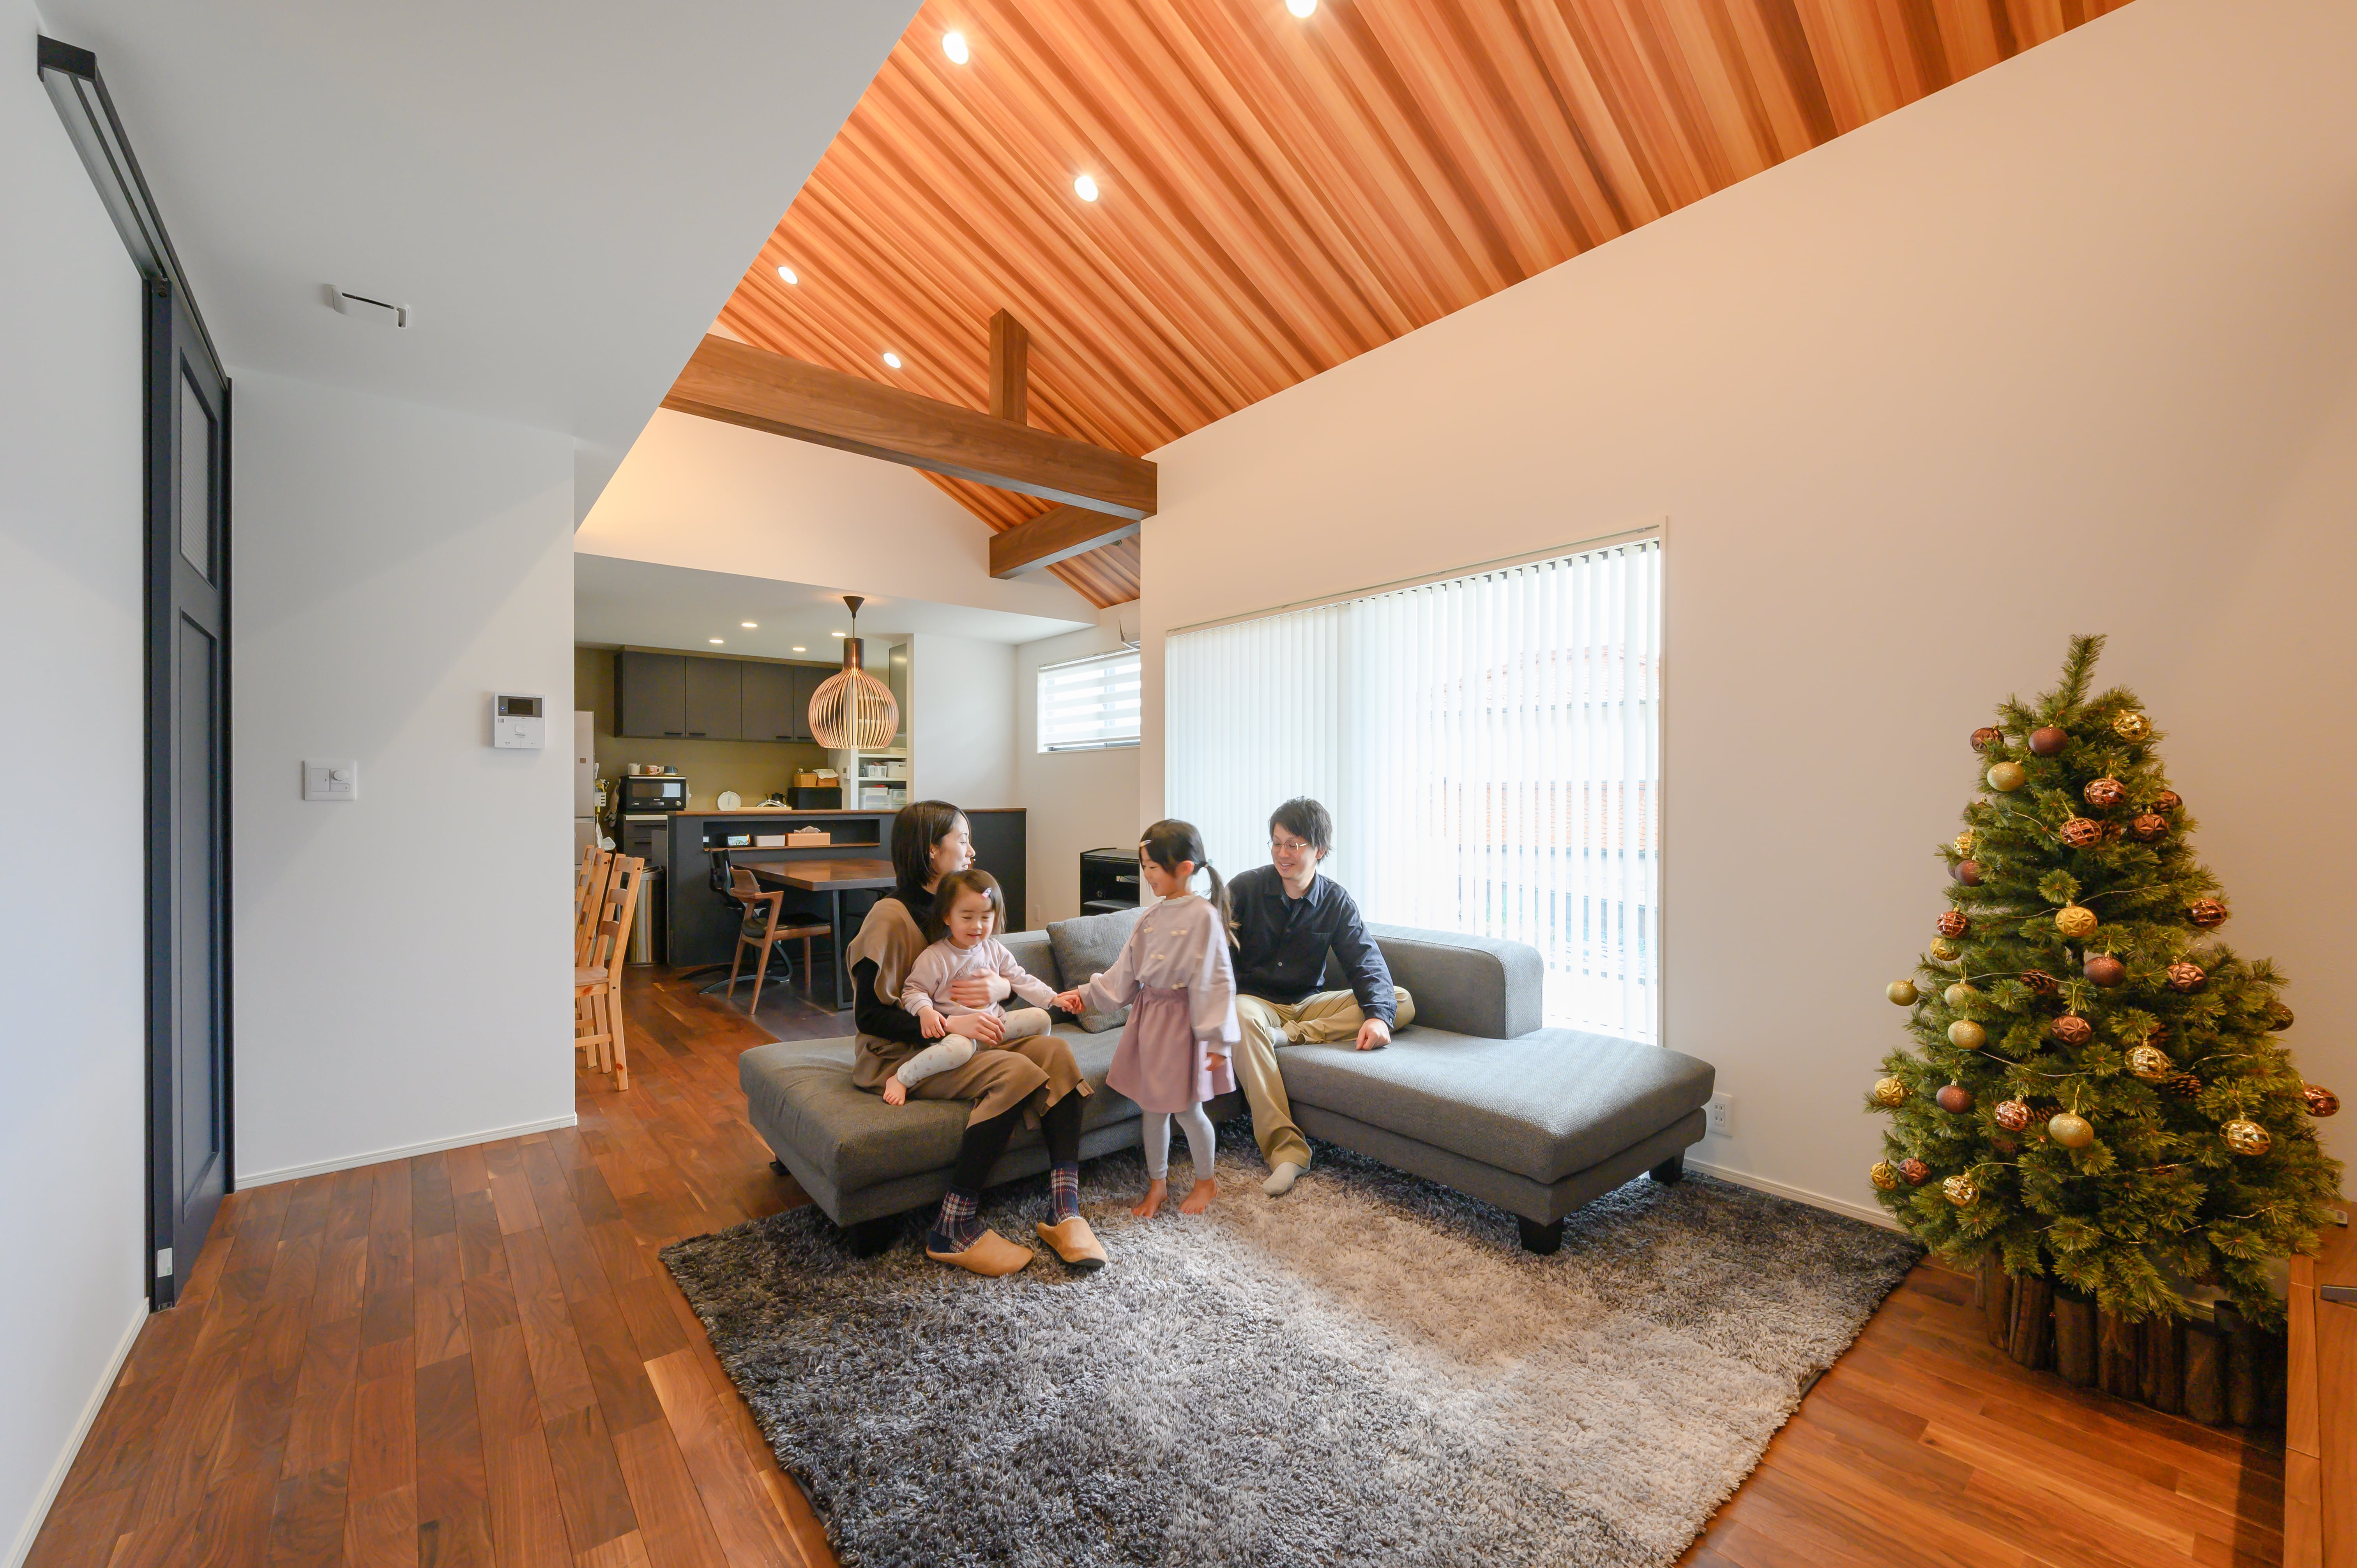 勾配天井と天井材が相まって美しい家族の憩いの空間。